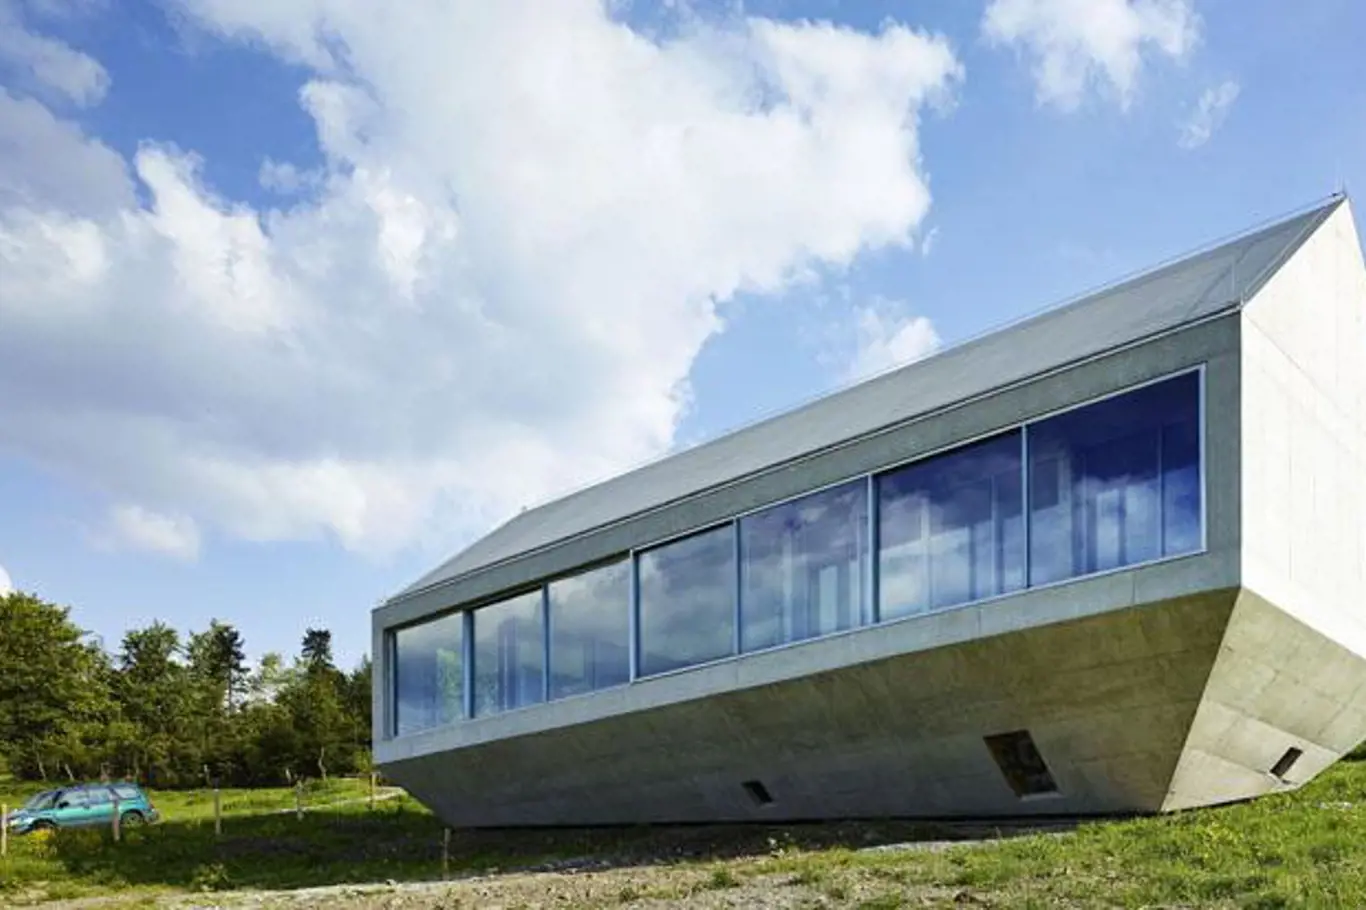 Robert Konieczny- KWK Promes, Konieczny's Ark, Brenna, Polsko; Zdroj: World Architecture Festival